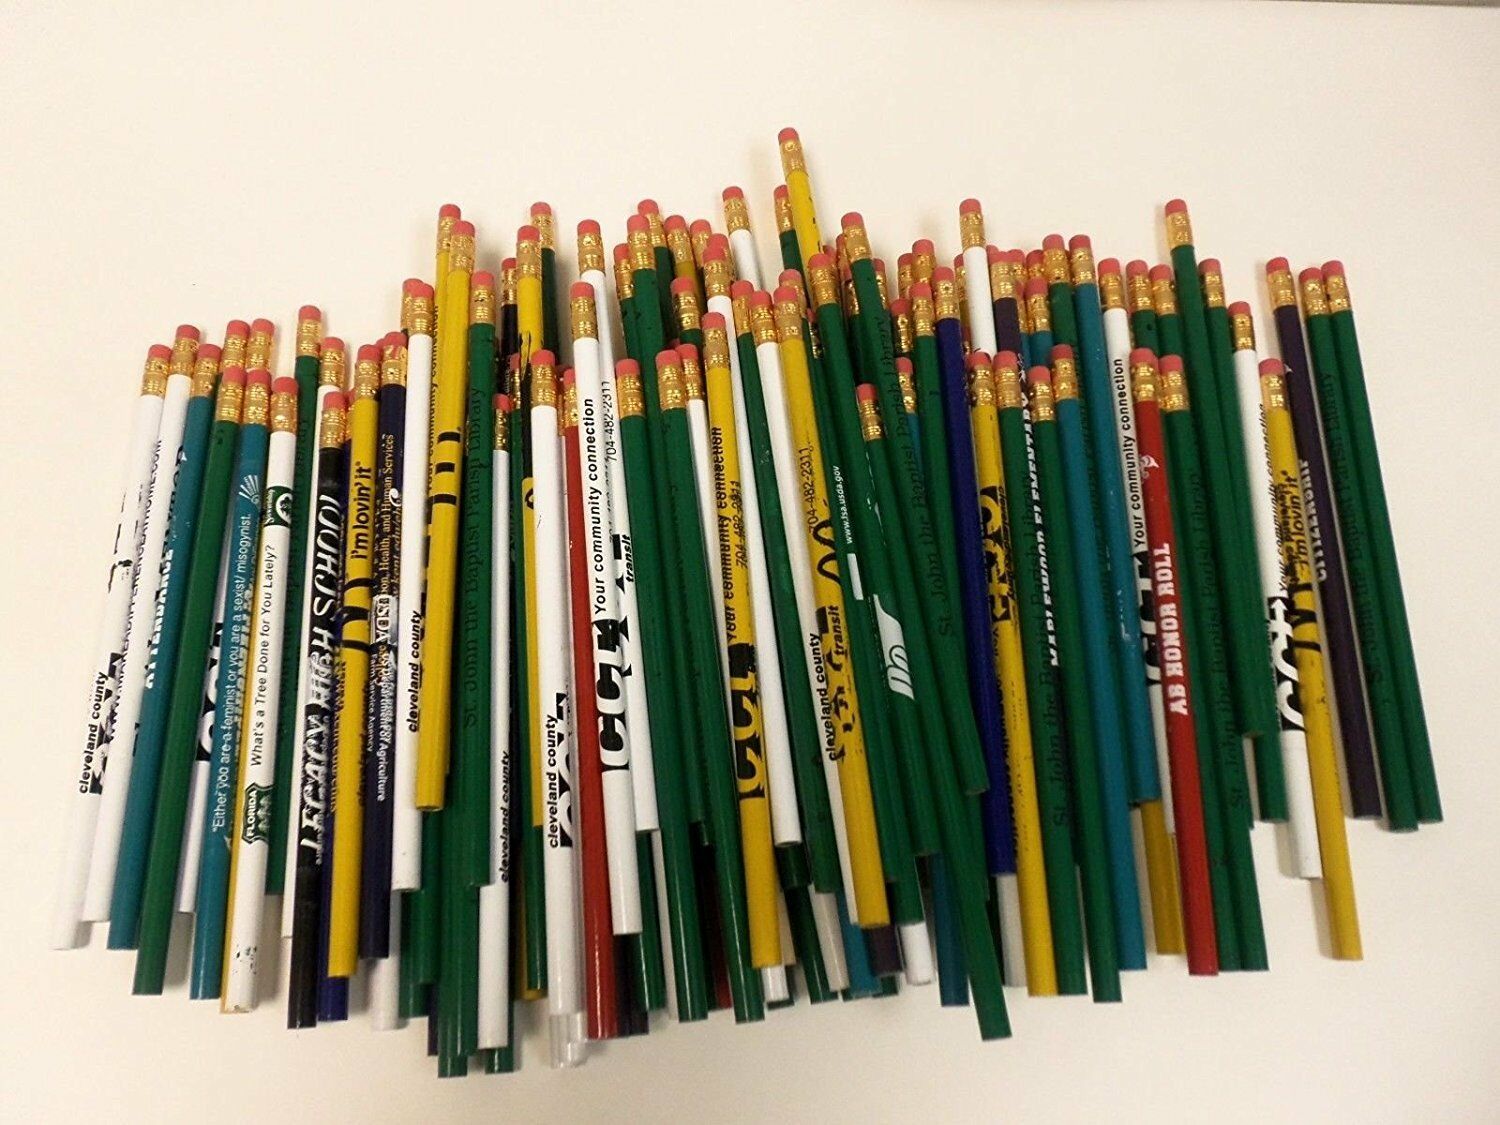 144 Lot Misprint Pencils With Rubber Eraser #2 Lead, Bulk Wholesale Lot